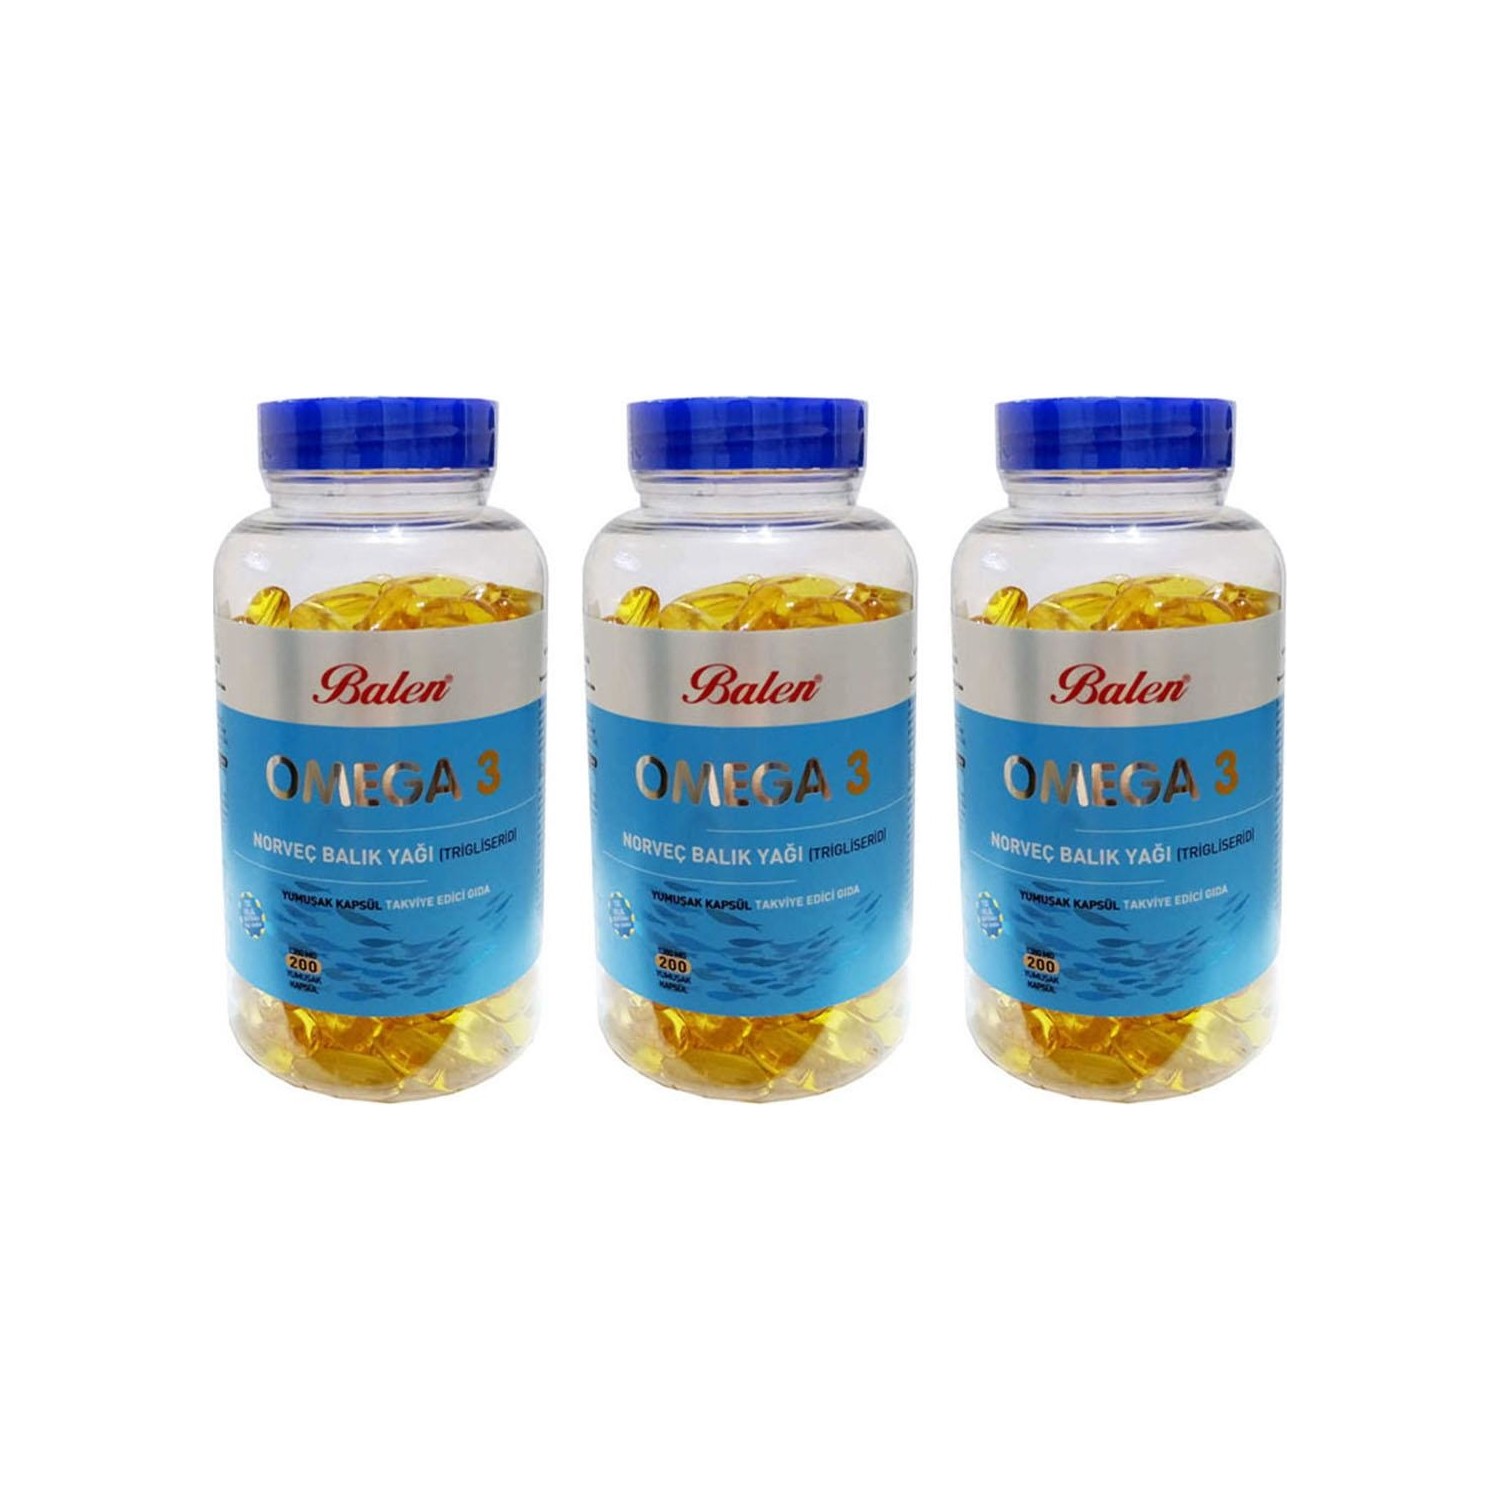 унитекс omega 3 vegetal капсулы 120 шт Норвежский рыбий жир Balen Omega-3 1380 мг, 3 упаковки по 200 капсул